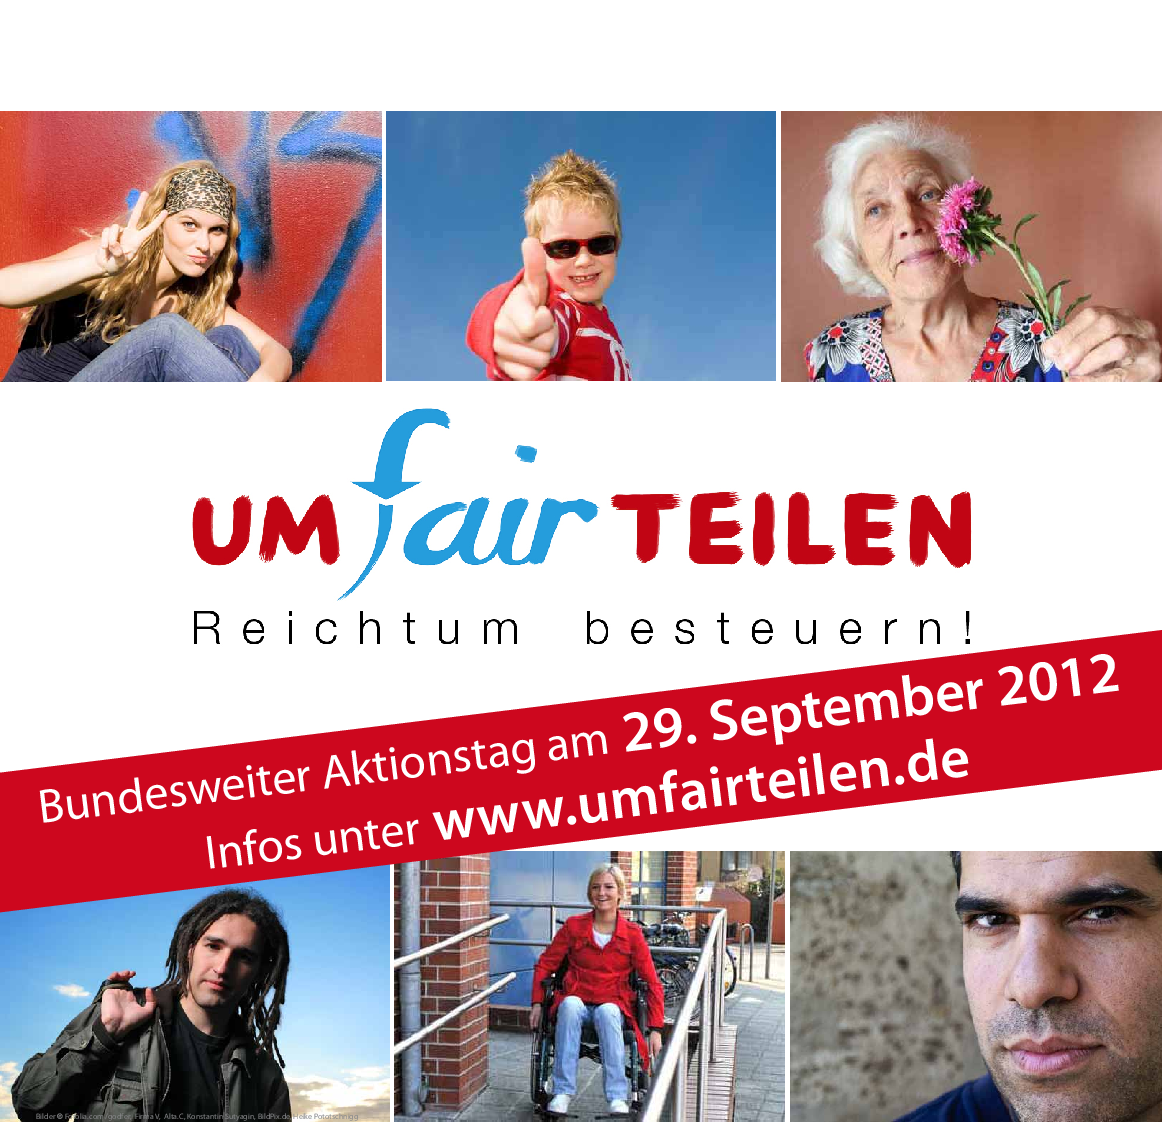 Plakat mit verschiedenen Menschen und der Aufschrift "umfairteilen - Reichtum besteuern. Bundesweiter Aktionstag am 29. September 2012."